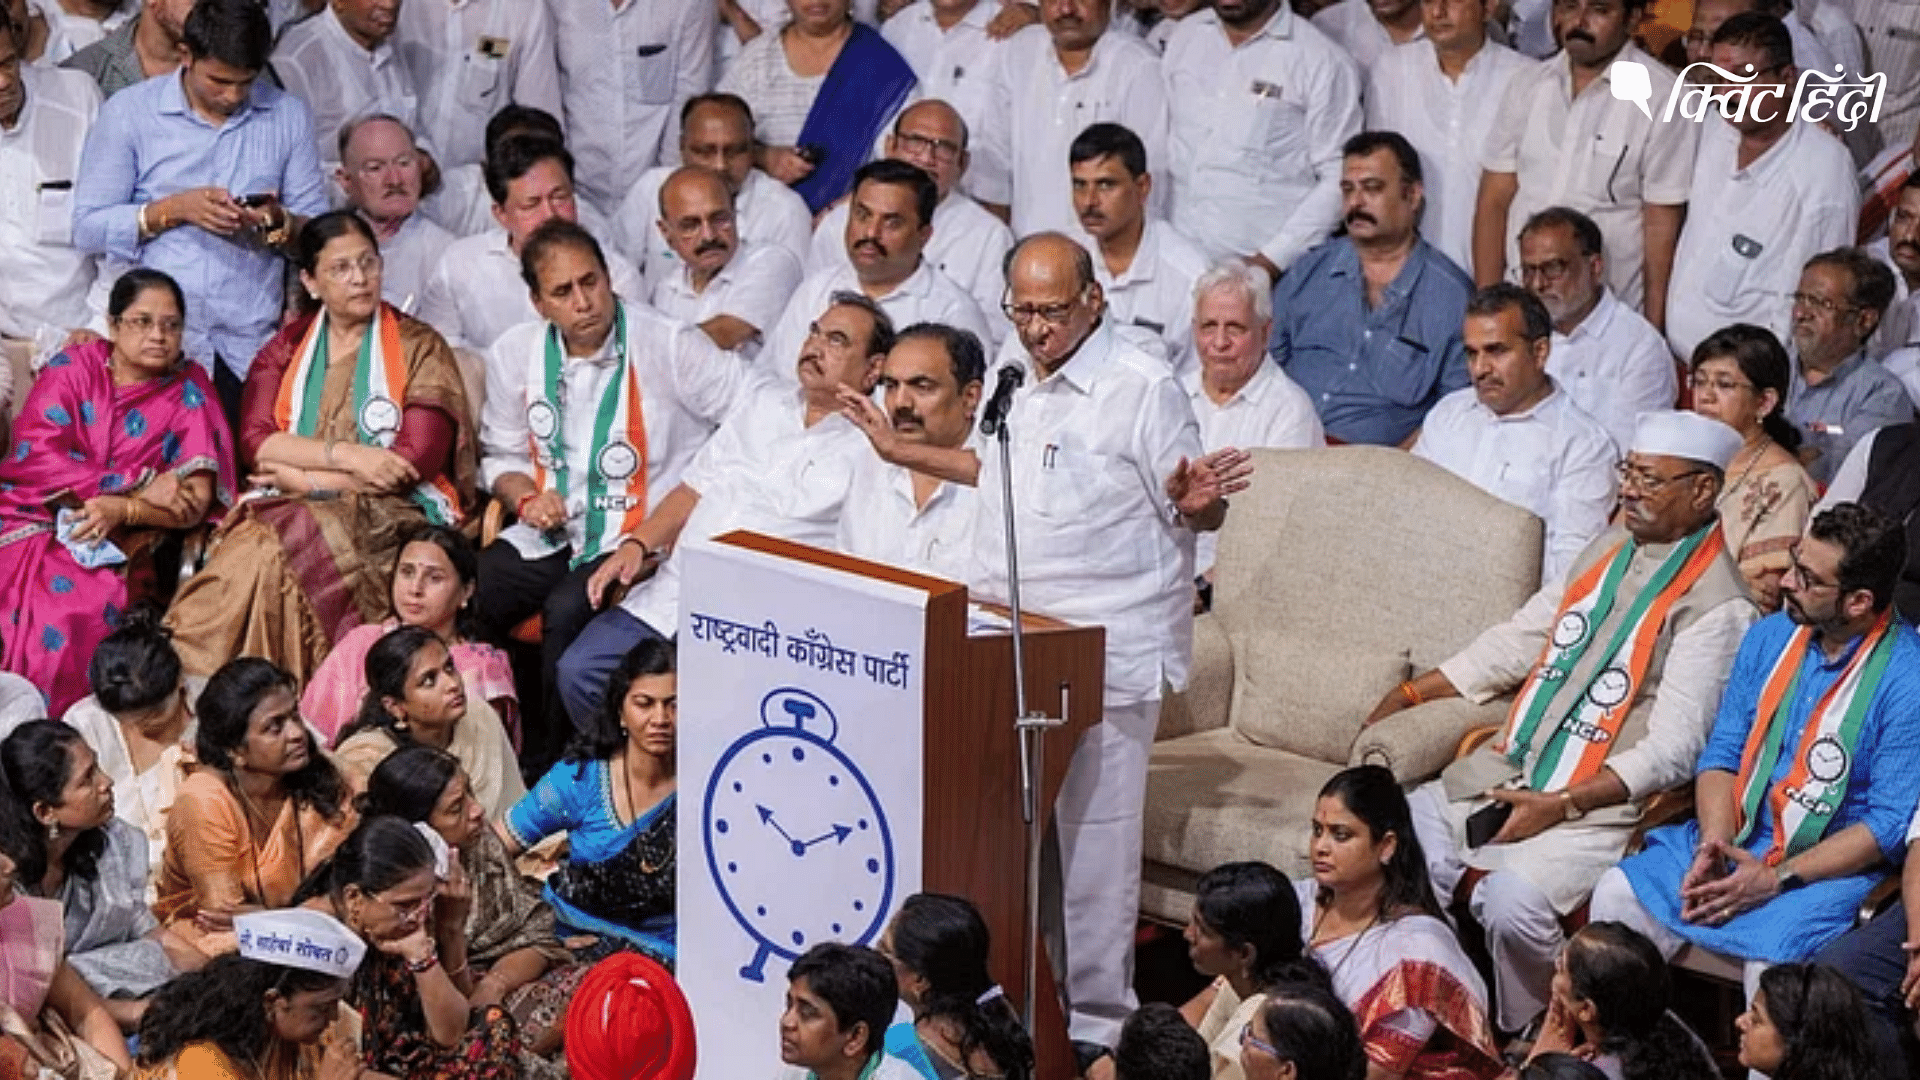 <div class="paragraphs"><p>"मैं बूढ़ा हूं लेकिन": बीड रैली में शरद पवार ने PM मोदी और अजित पर साधा निशाना</p></div>